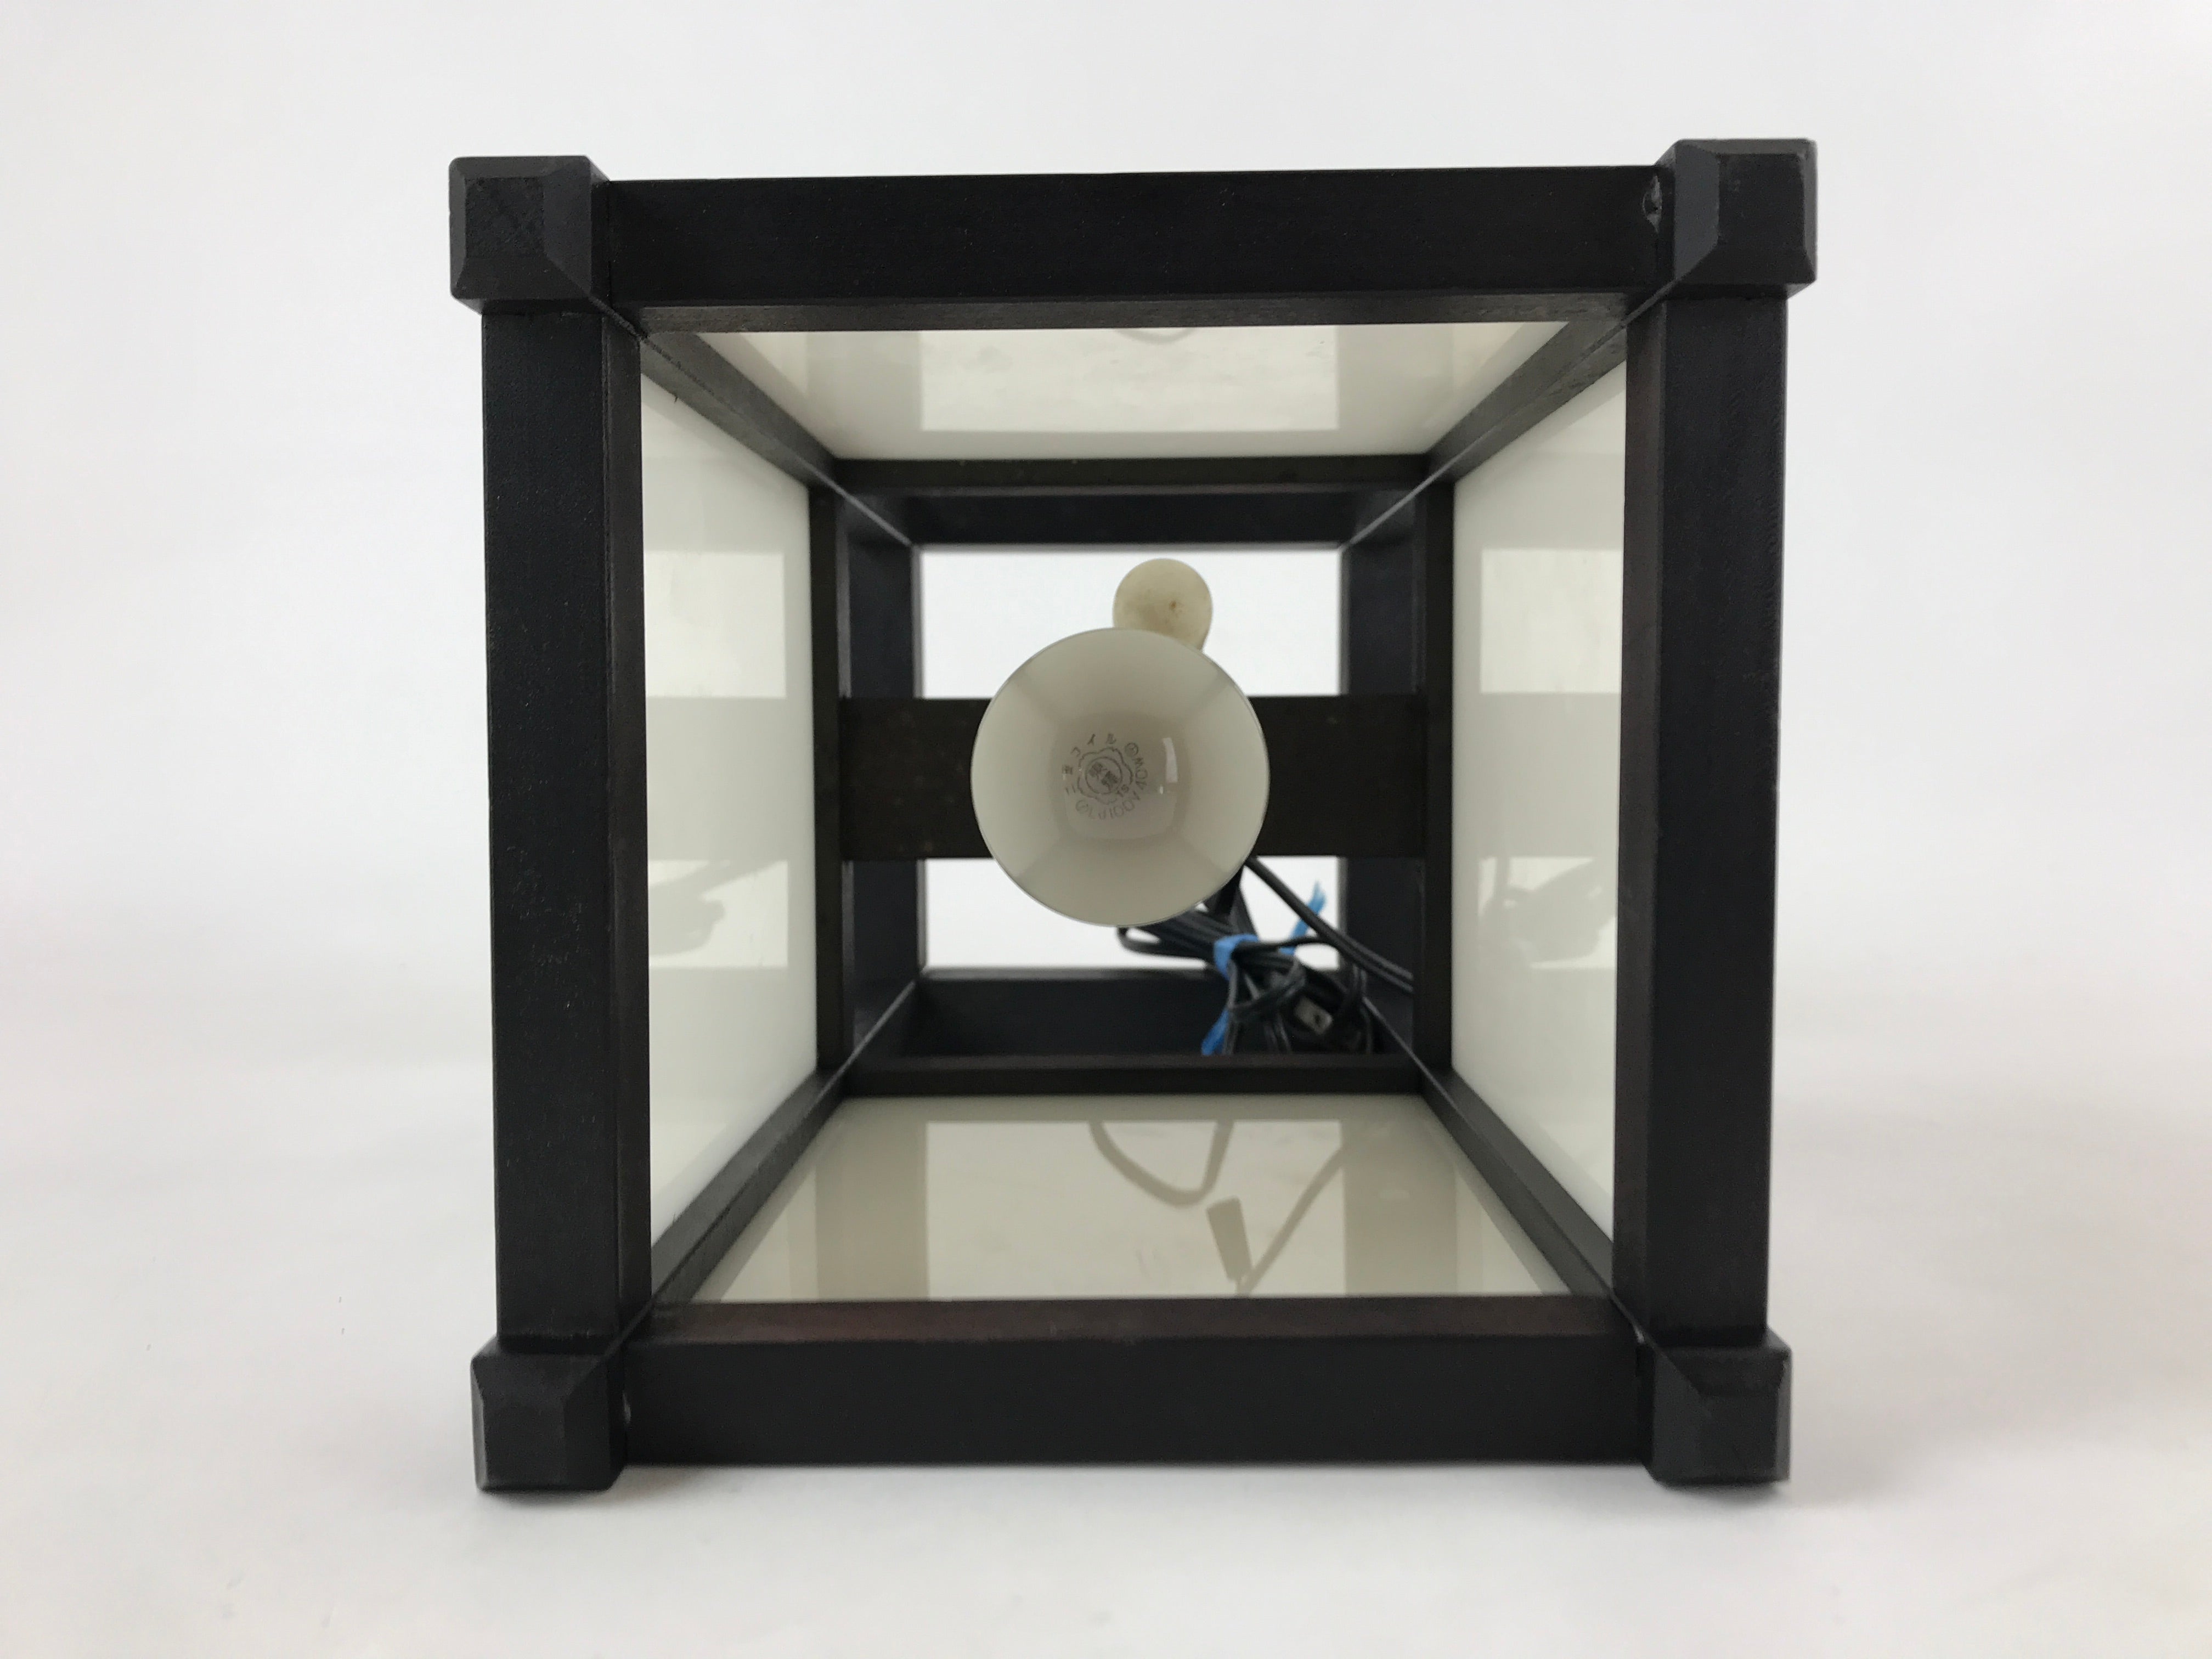 Japanese Electric Lantern Floor Lamp Vtg Table Lamp Wood Frame Resin Panel LT66